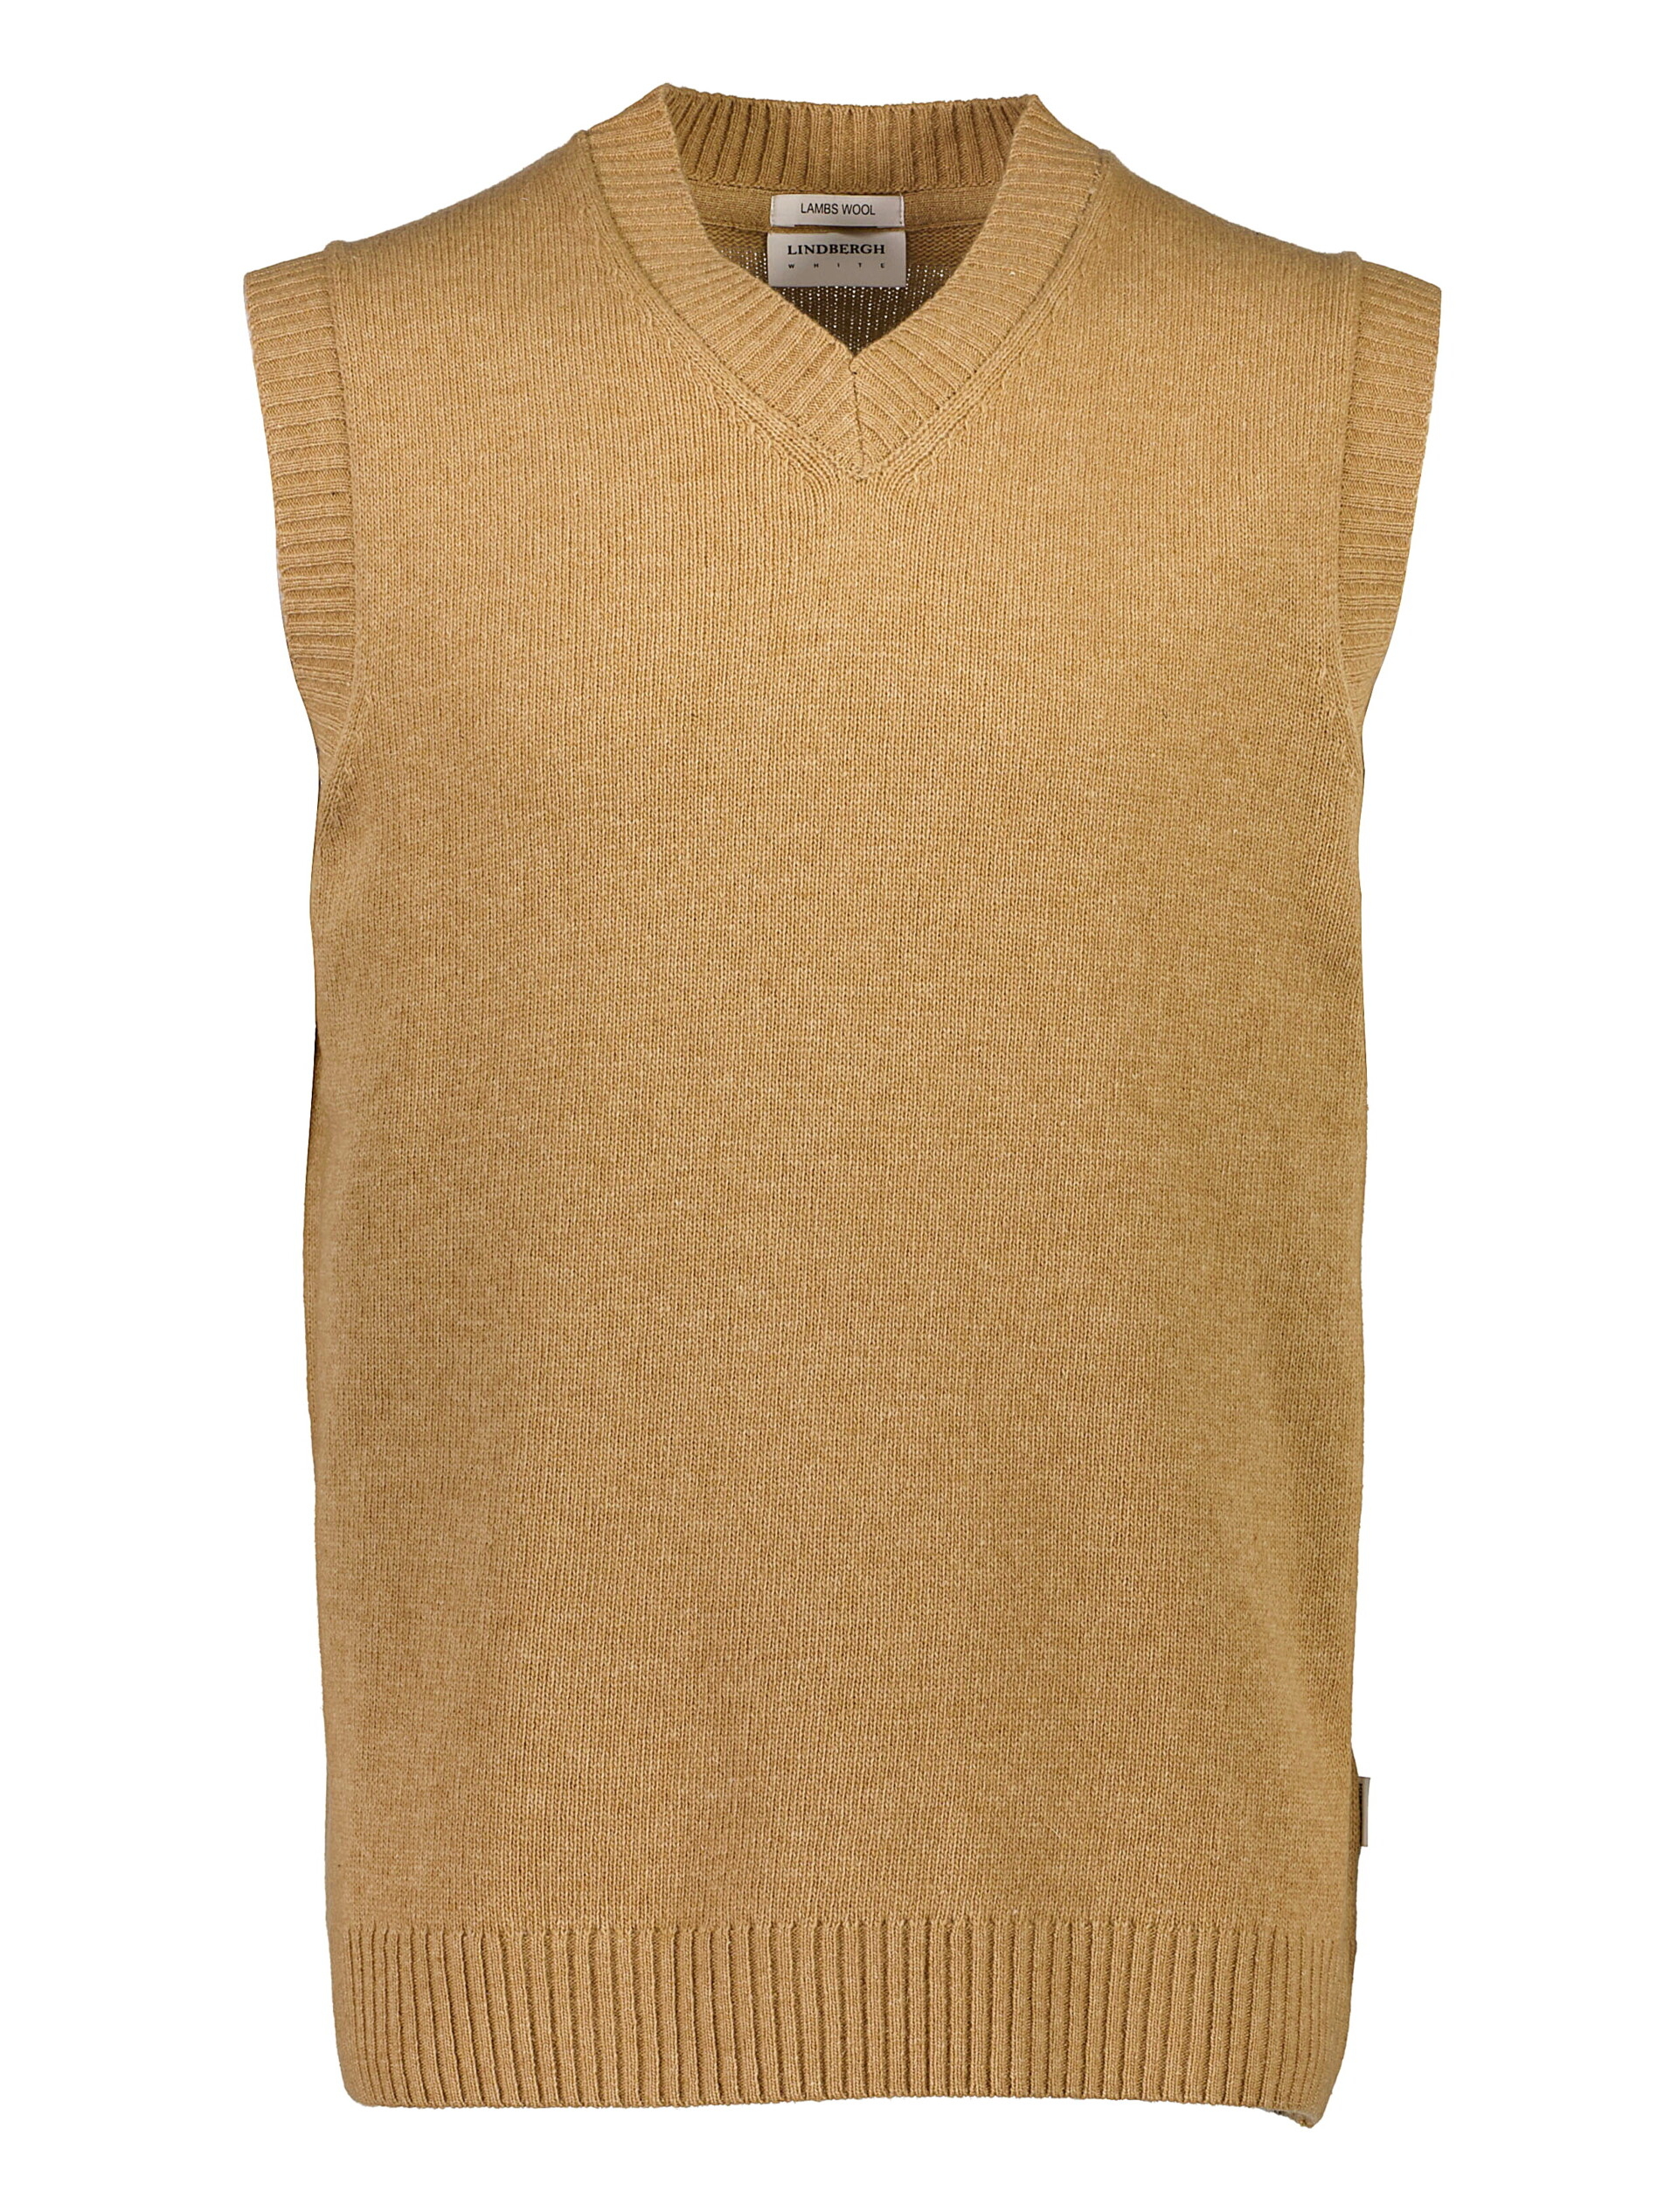 Lindbergh Knitted vest brown / camel